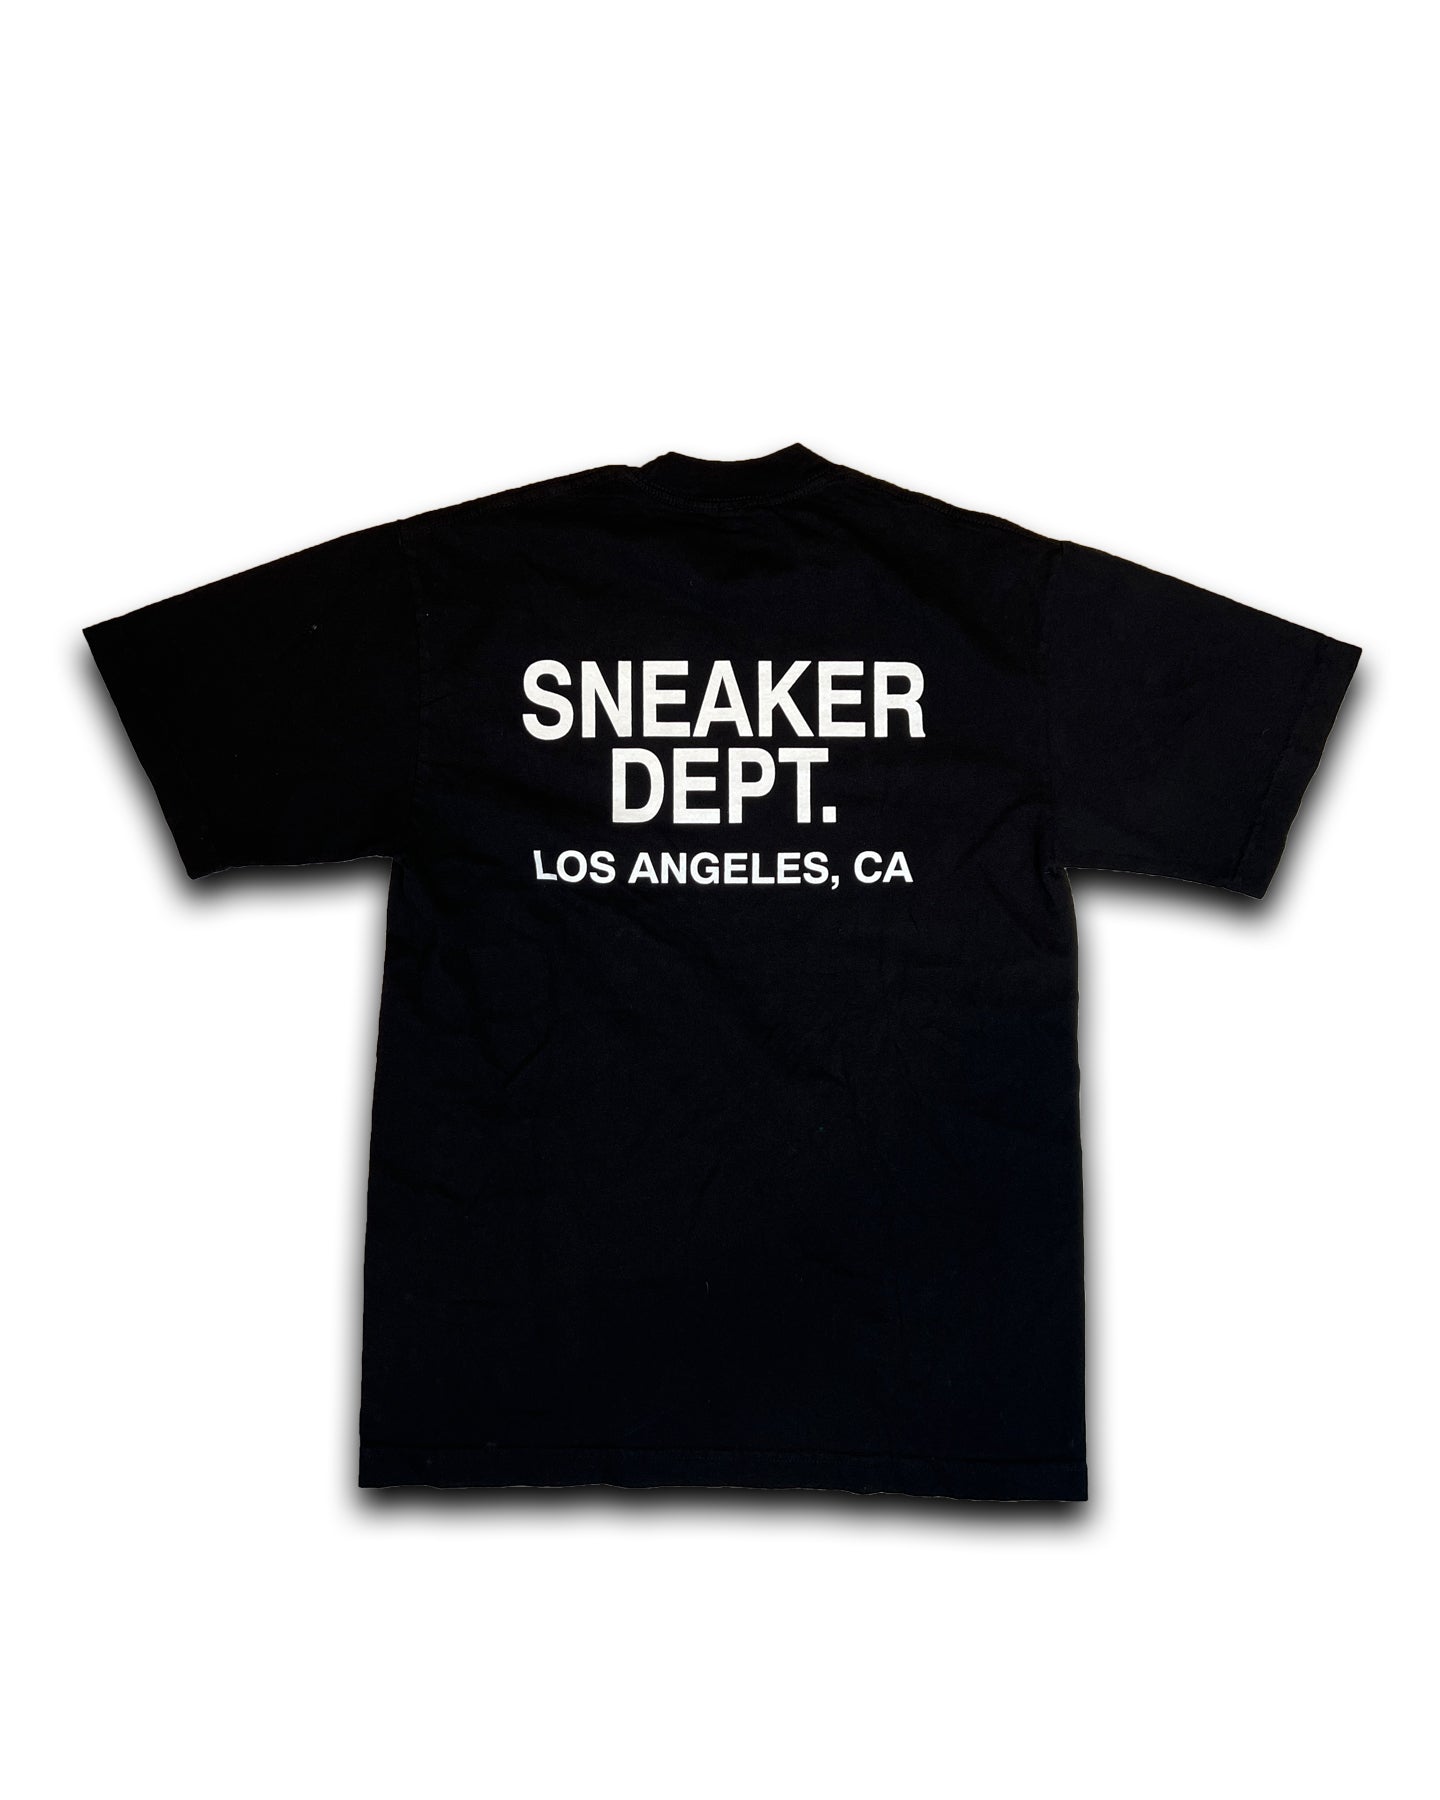 SNEAKER DEPT. LOS ANGELES - BLACK TEE